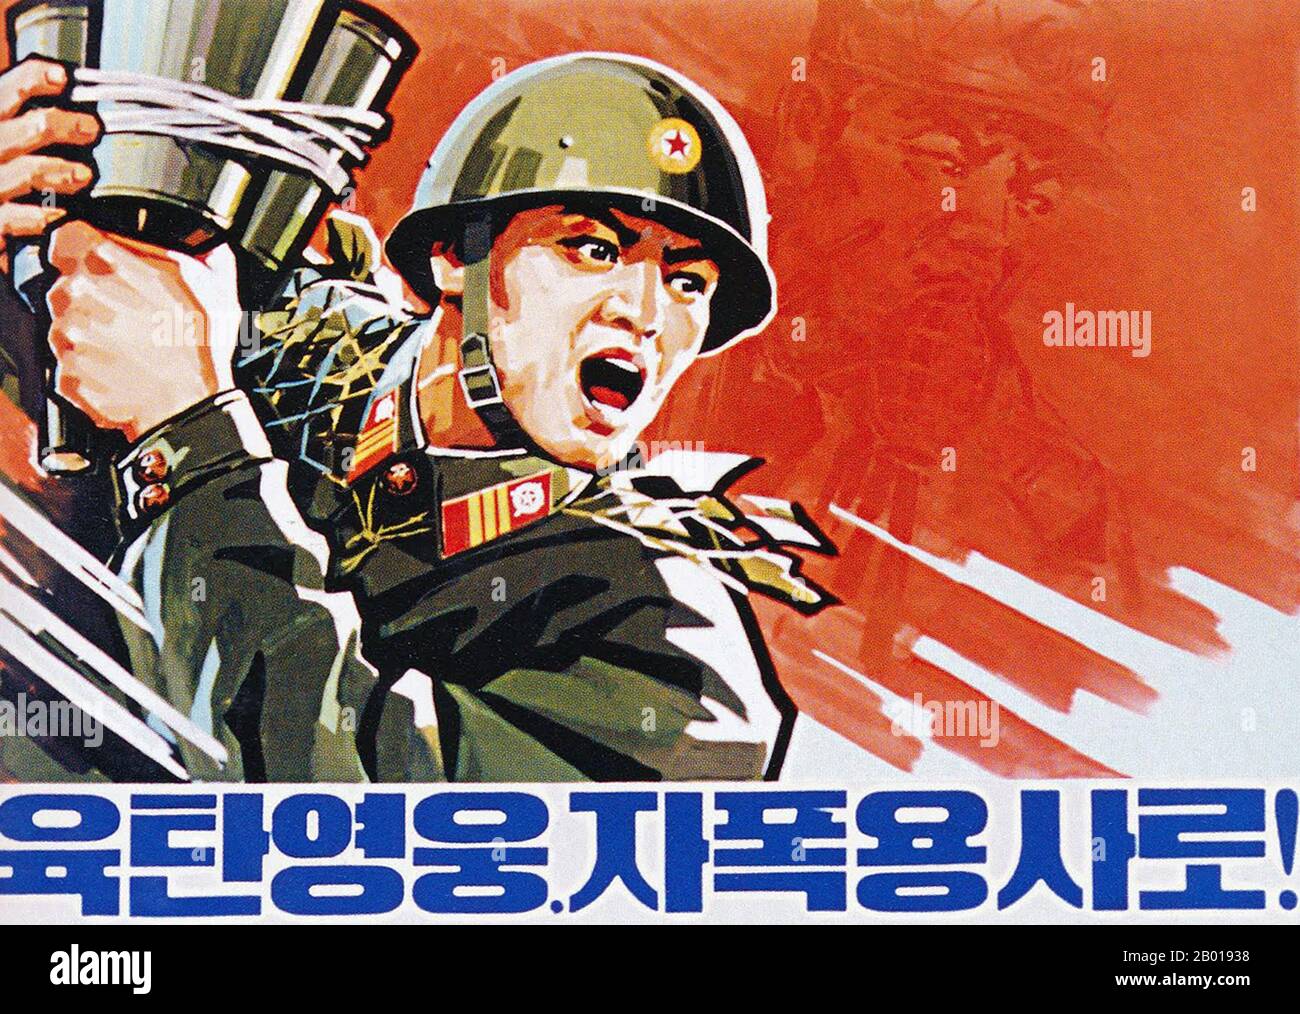 Korea: Propagandaplakat für Nordkorea (DVRK), das die nordkoreanischen Streitkräfte verherrlicht, 1950s. Sozialistischer Realismus ist ein Stil realistischer Kunst, der sich unter dem Sozialismus in der Sowjetunion entwickelte und in anderen kommunistischen Ländern zu einem dominanten Stil wurde. Der sozialistische Realismus ist ein teleologisch orientierter Stil, der die Förderung der Ziele des Sozialismus und Kommunismus zum Ziel hat. Obwohl verwandt, sollte sie nicht mit dem sozialen Realismus verwechselt werden, einer Art Kunst, die Themen sozialer Belang realistisch darstellt. Der sozialistische Realismus verherrlicht im Allgemeinen die Ideologie des kommunistischen Staates. Stockfoto